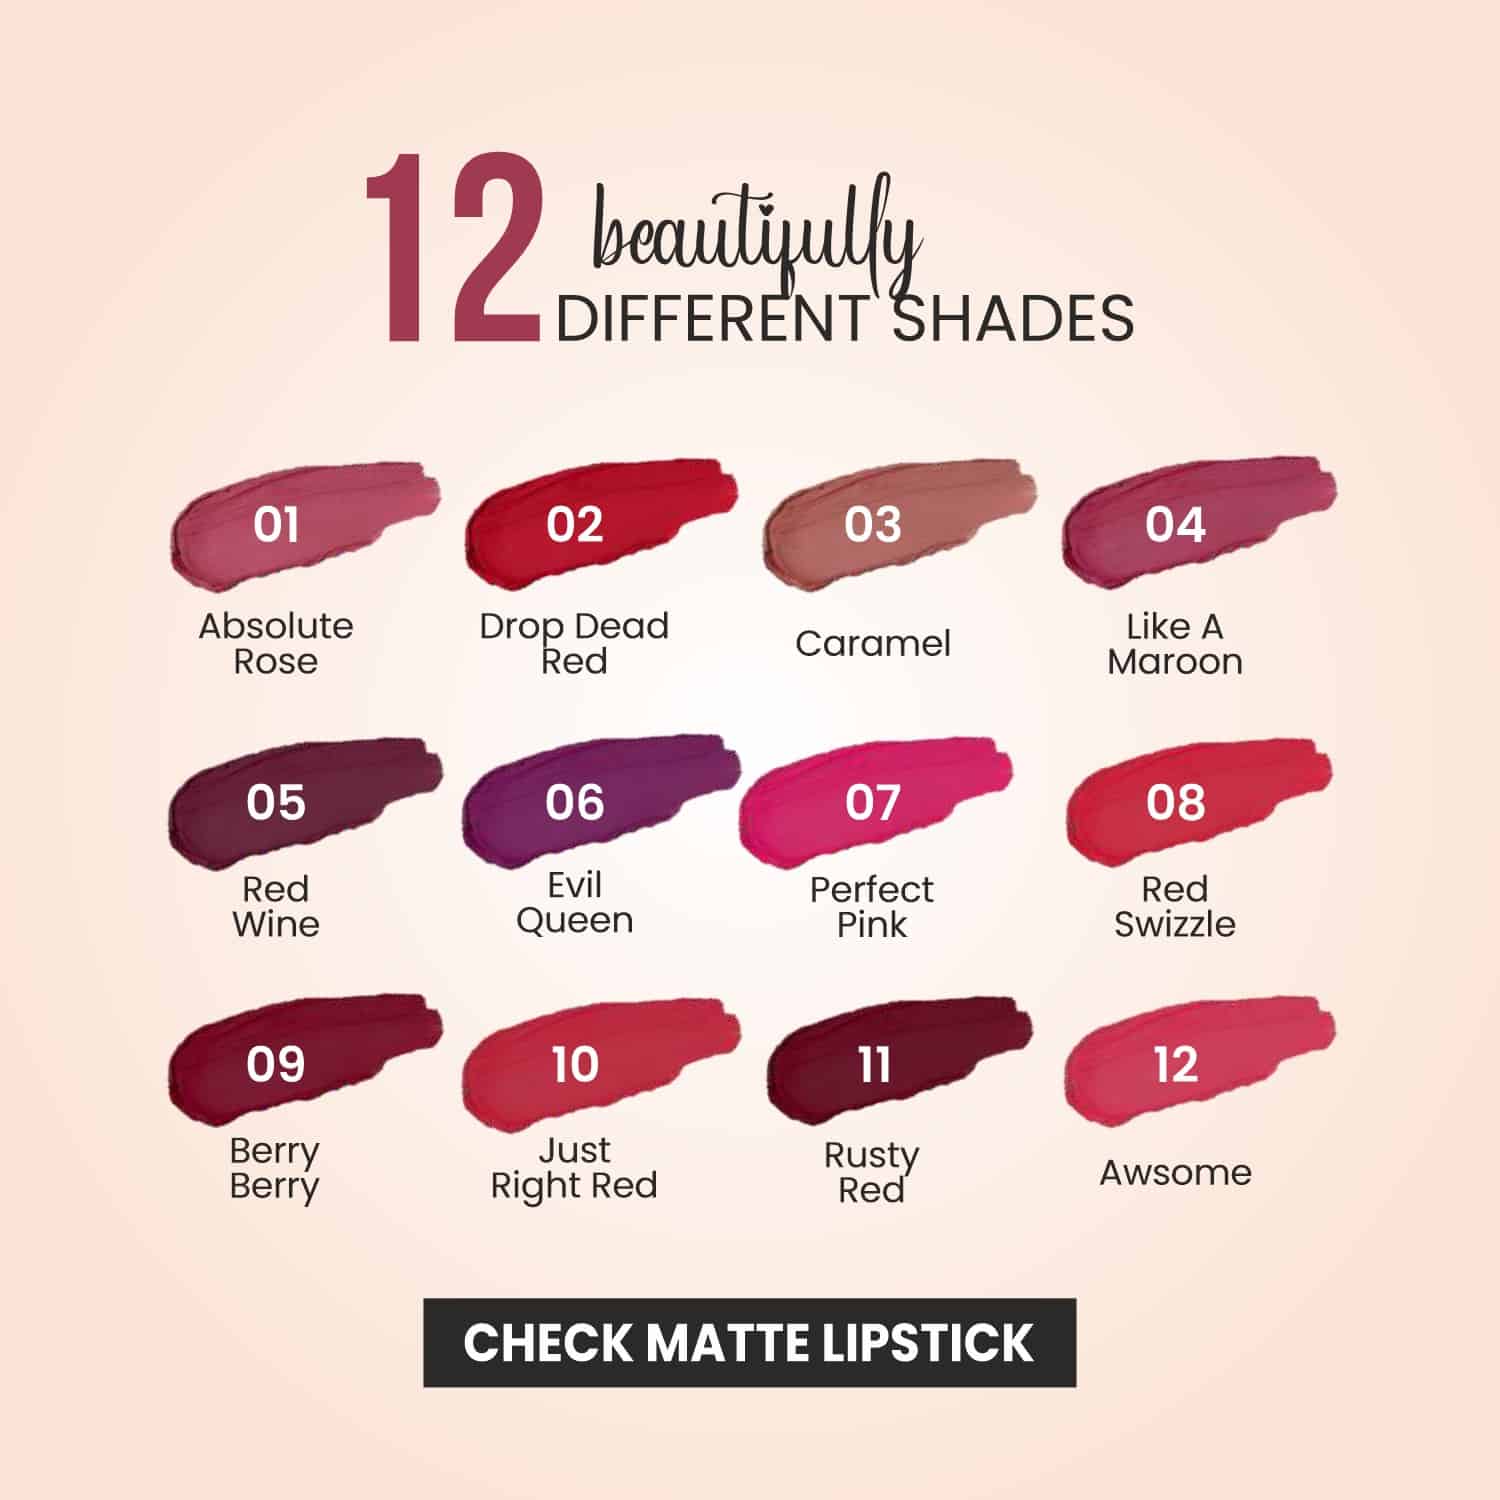 Check Matte Lipstick - 07 Perfect Pink